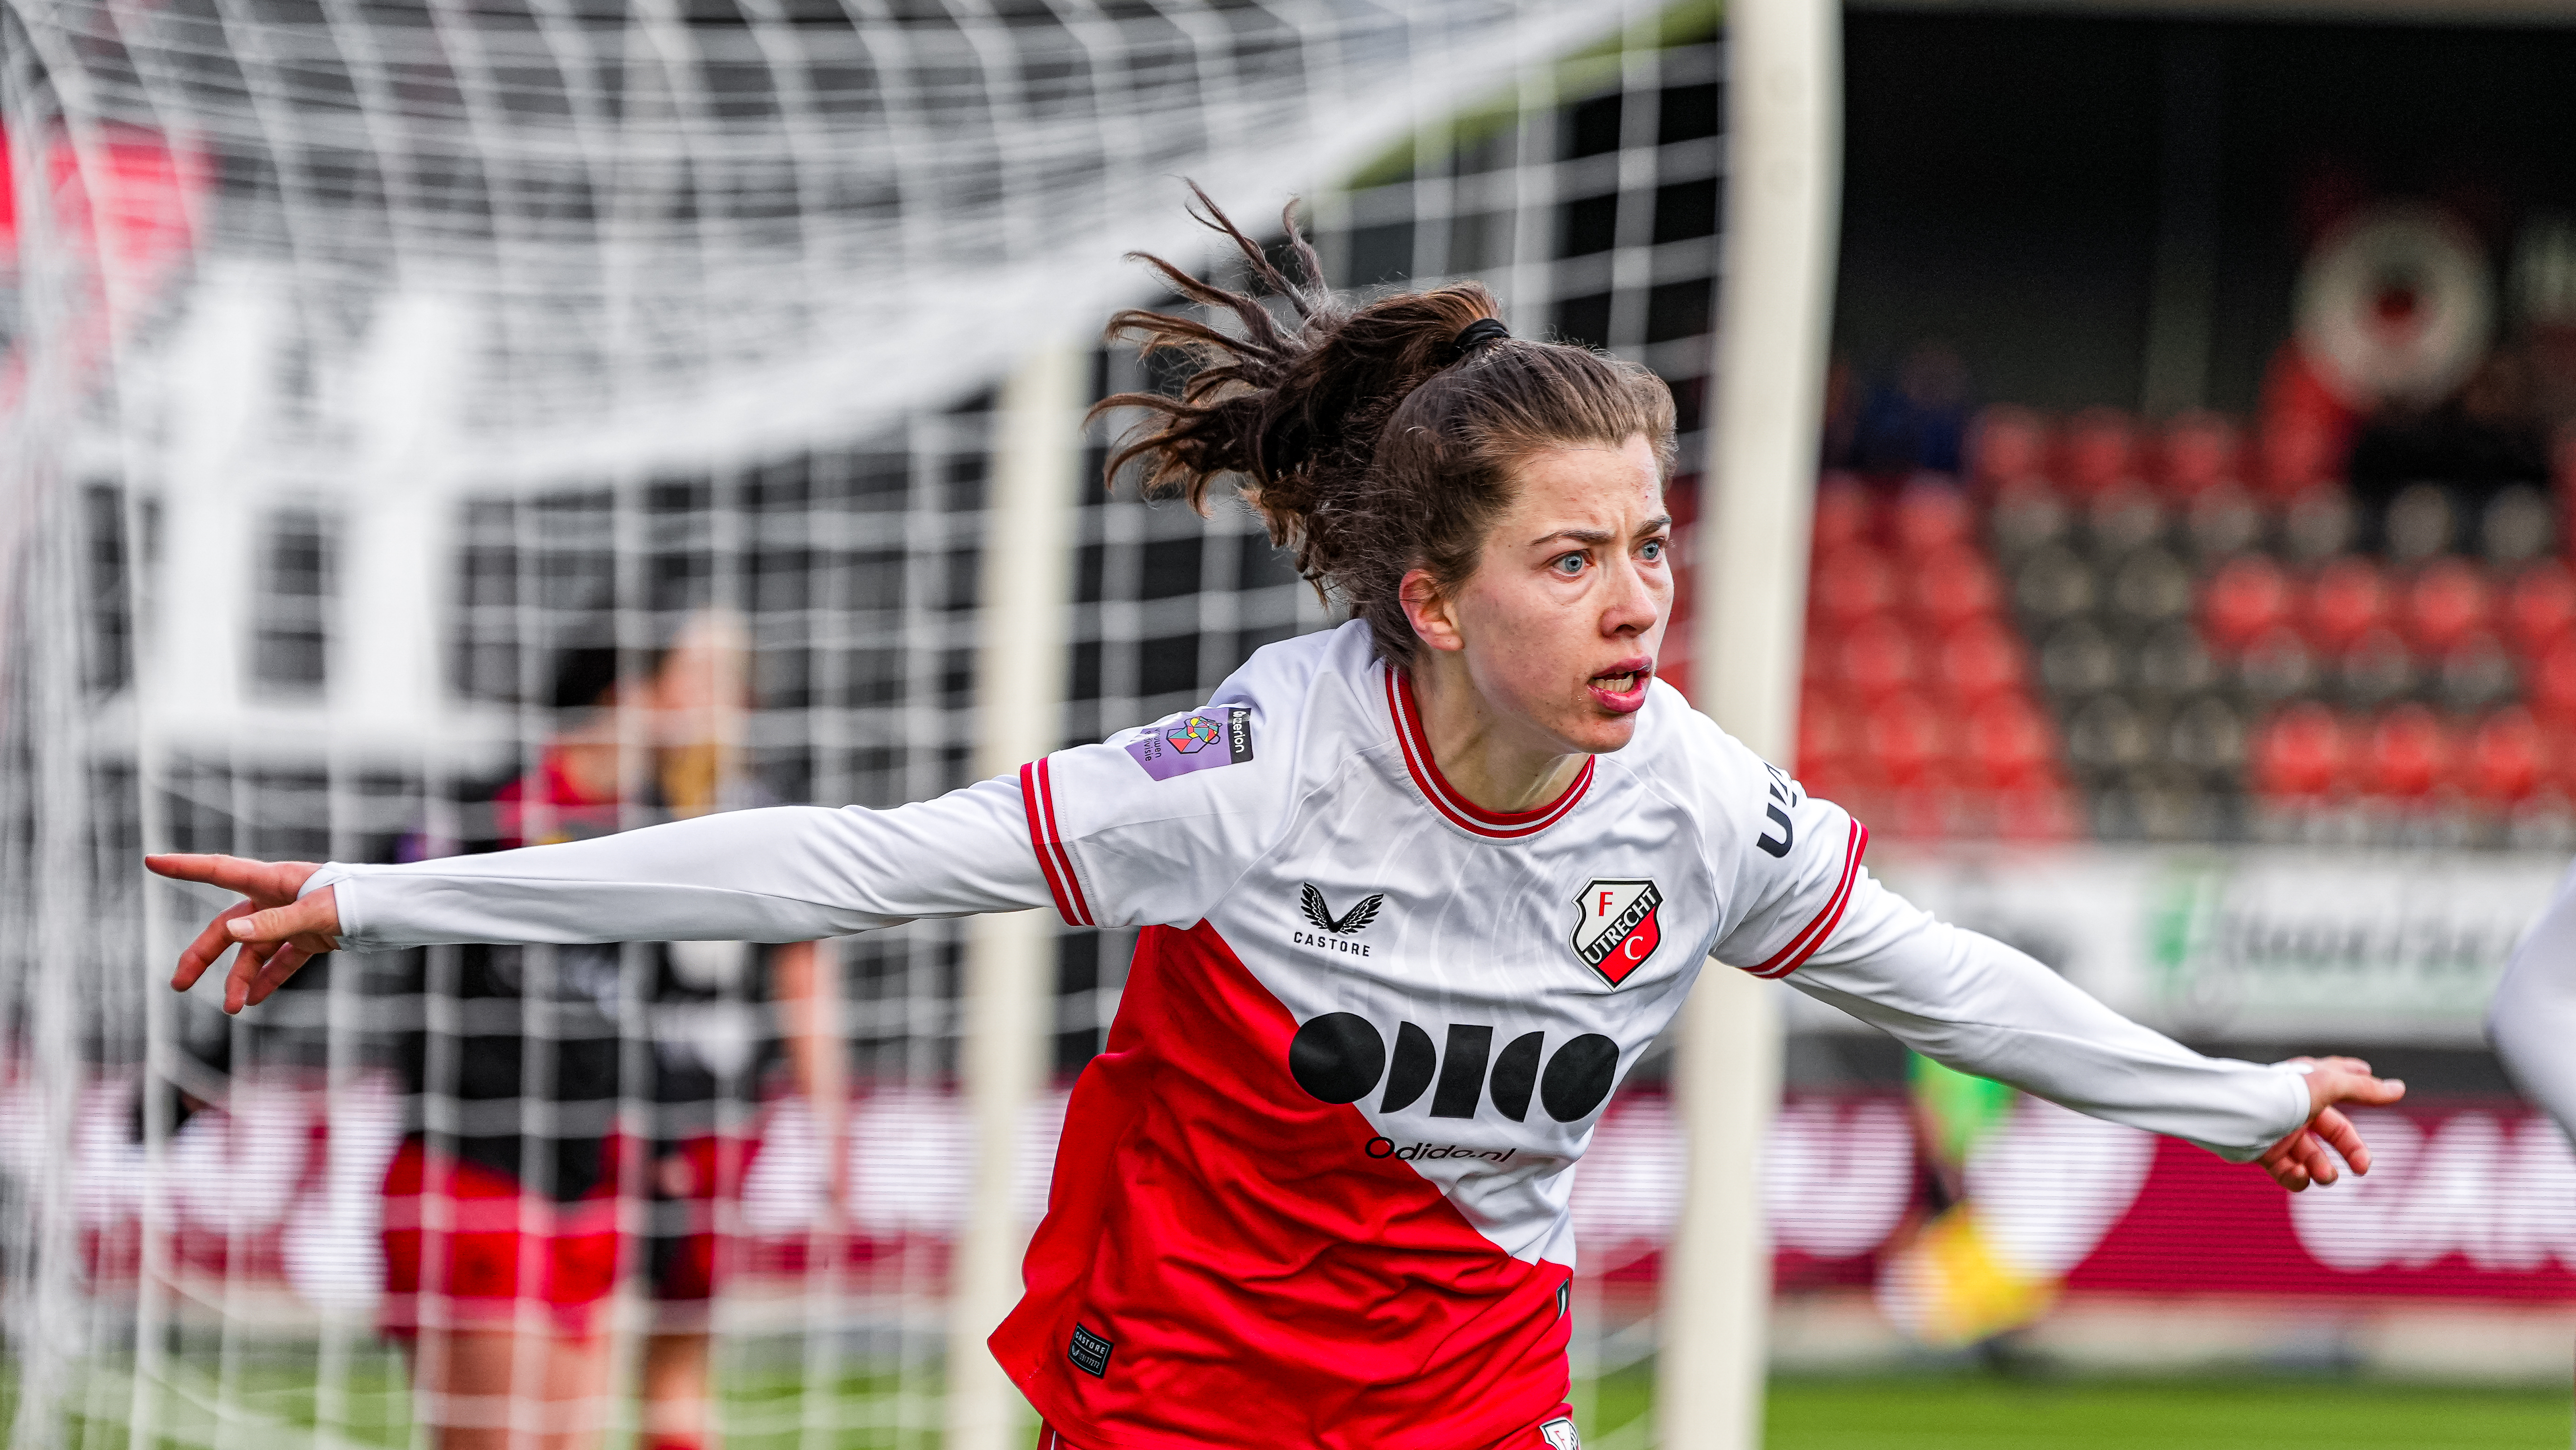 Winst met ruime cijfers voor FC Utrecht Vrouwen tijdens vermakelijk duel in Kralingen